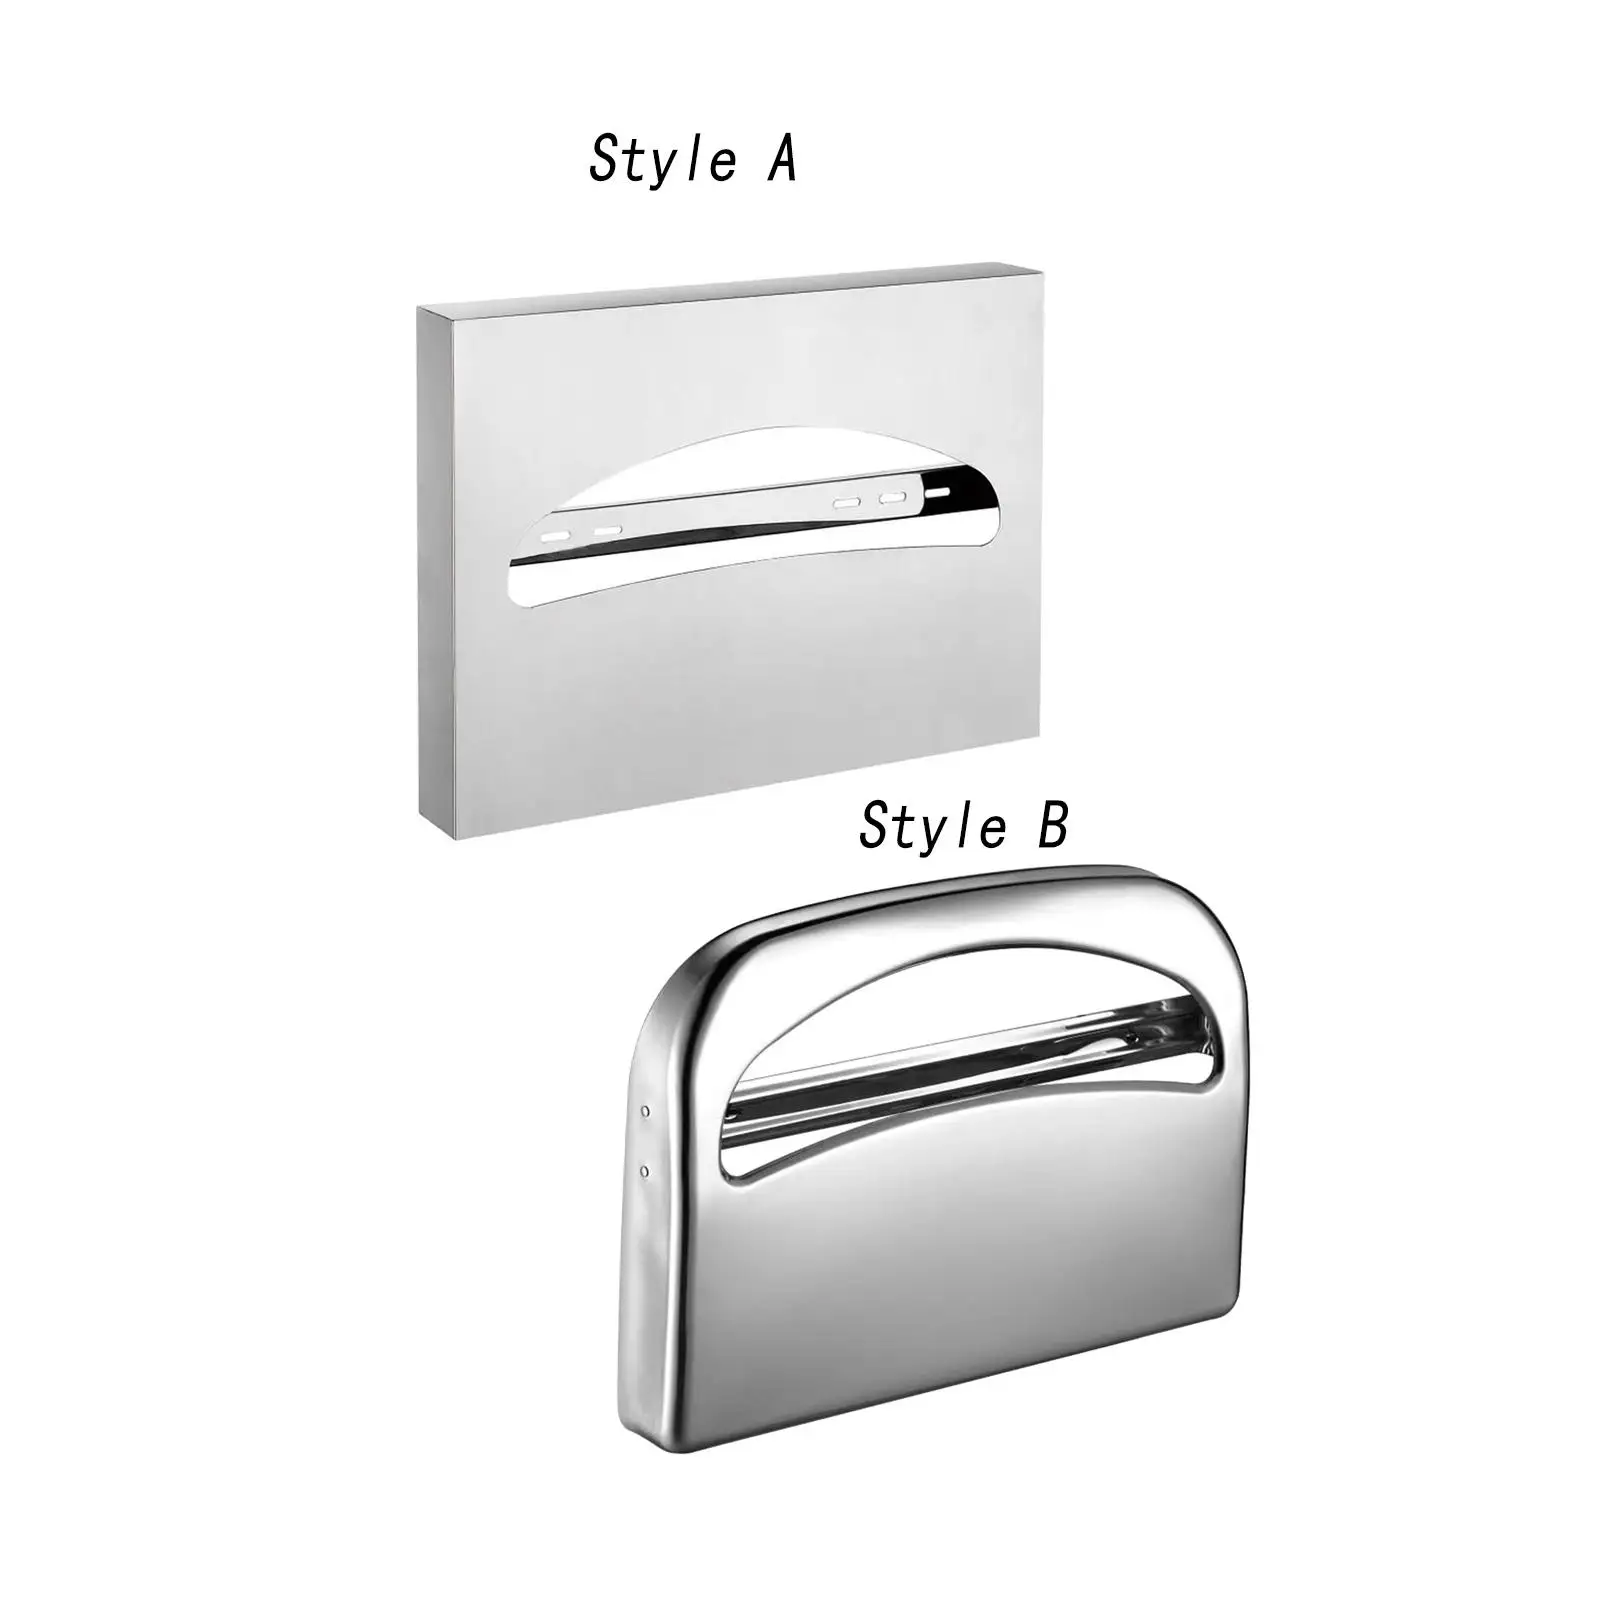 Toilet Seat Covers Dispenser Lightweight Holder Heavy Duty Stainless Steel Toilet Seat Cover Holder for Bathroom Restaurants